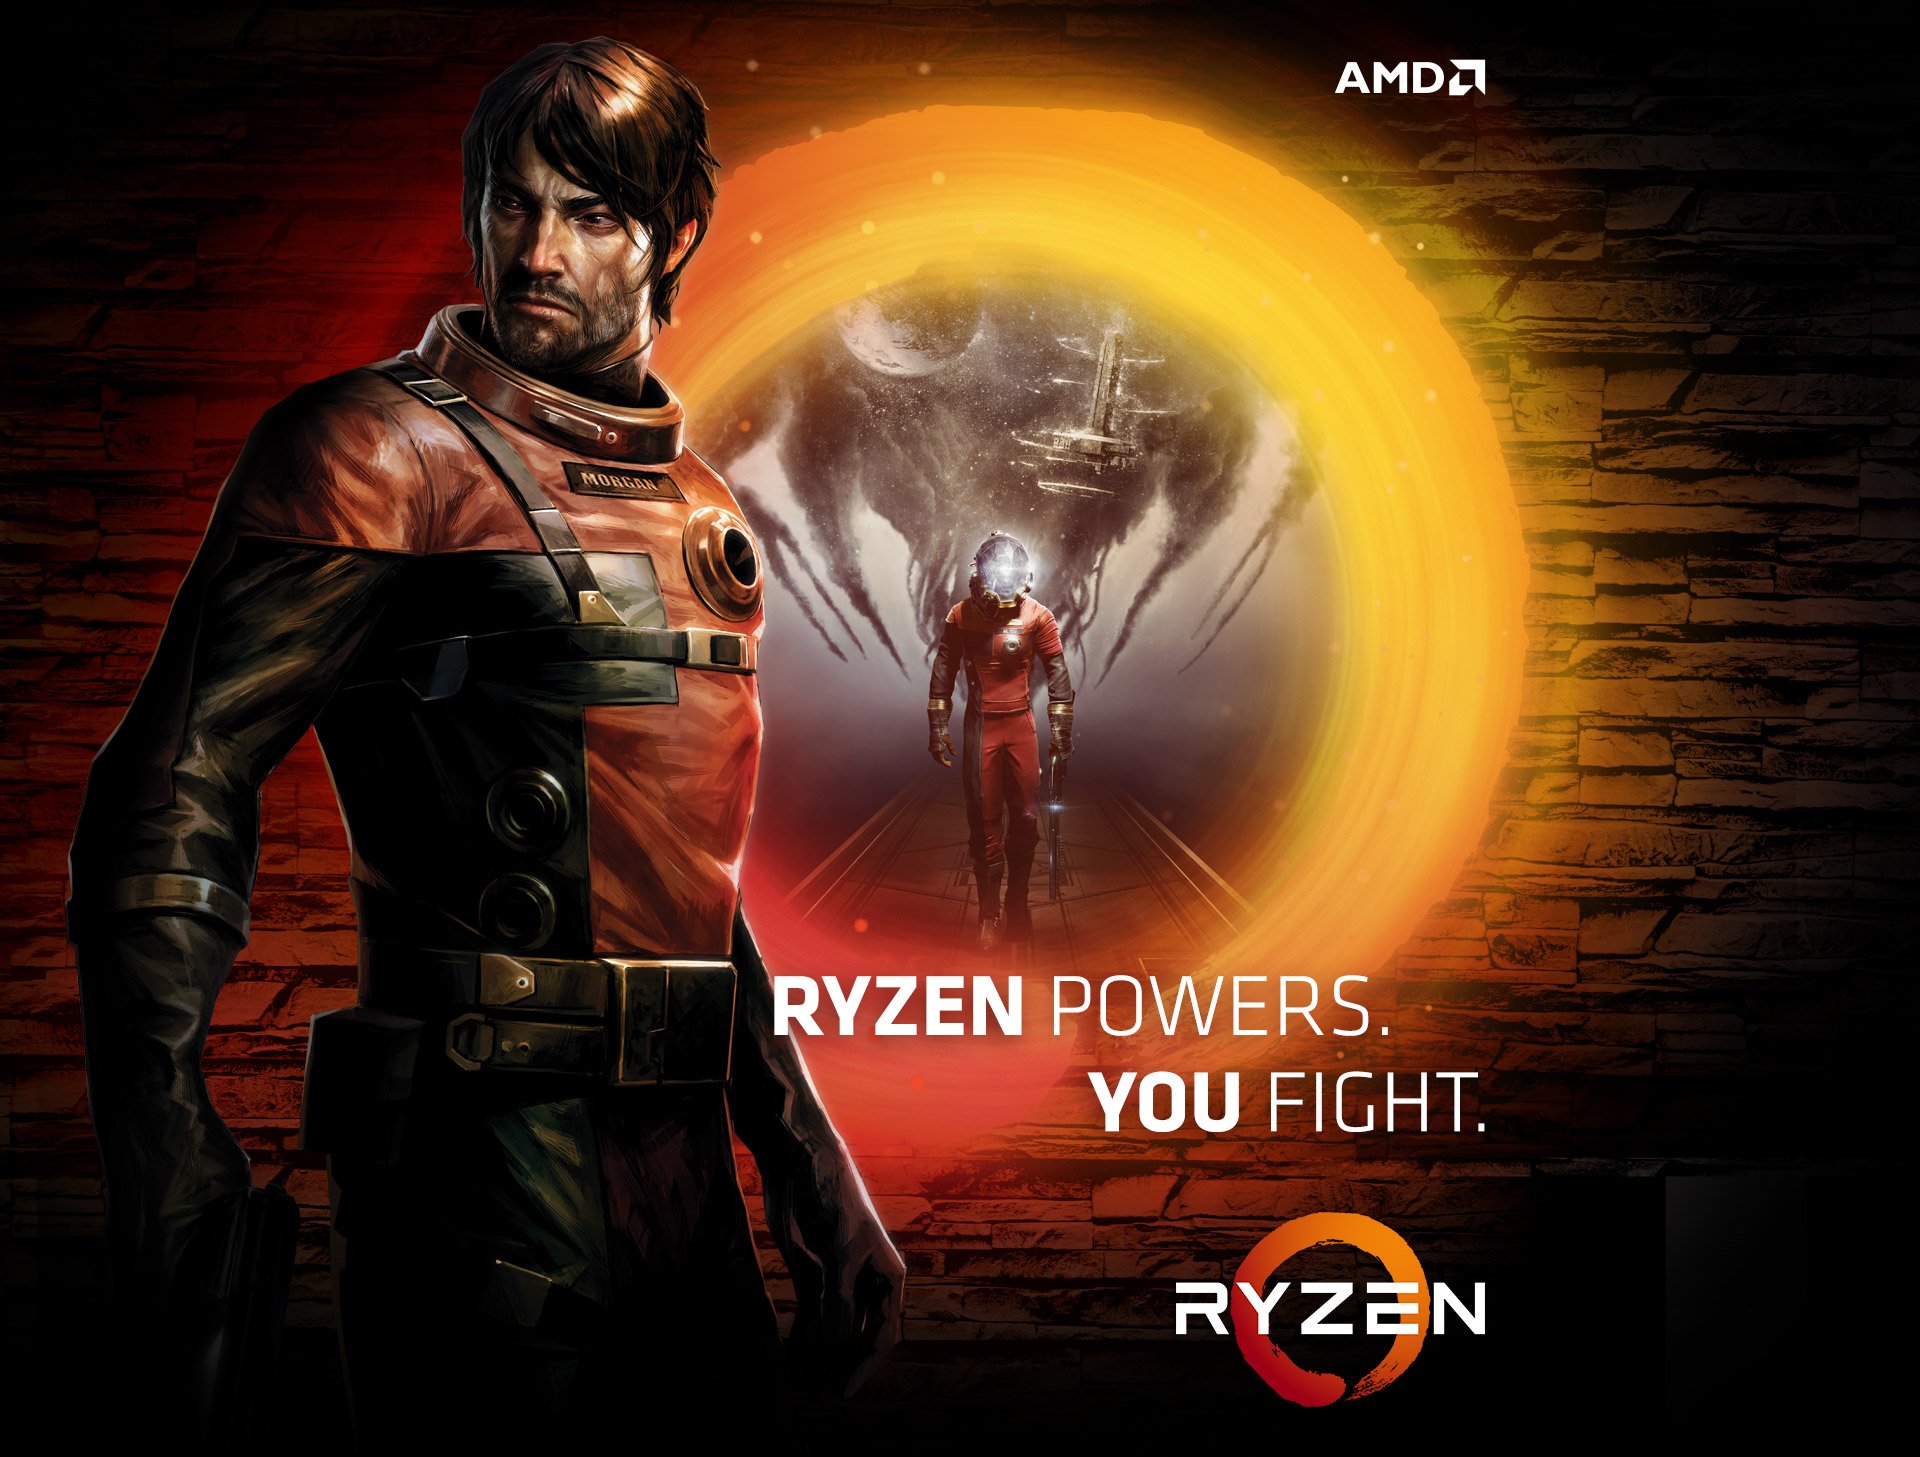 Ryzen powers. You fight.